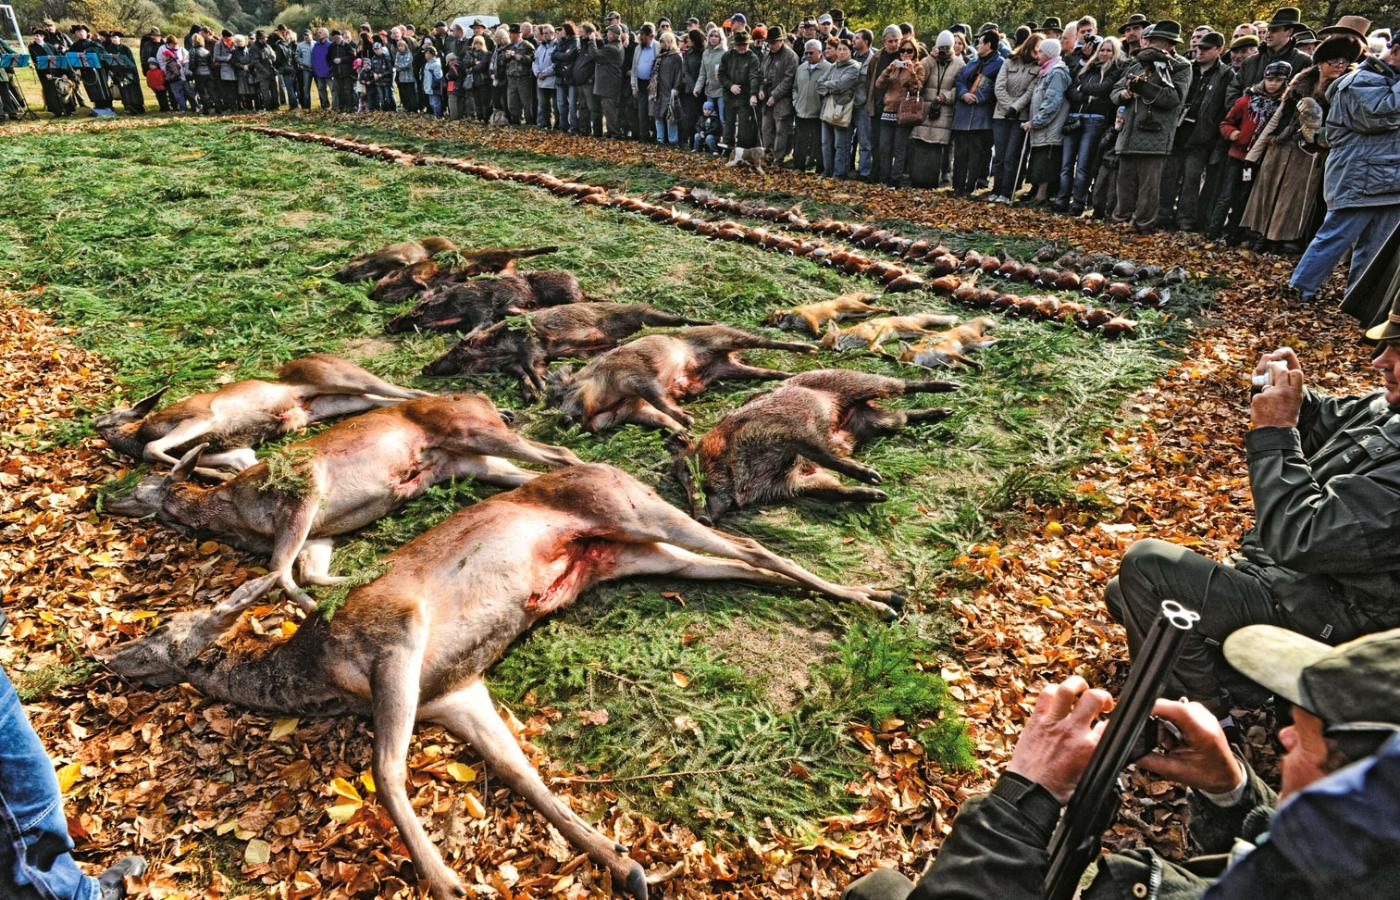 Zezwolenie na udział dzieci w polowaniach byłoby cywilizacyjnym regresem – uważa Radosław Ślusarczyk z Pracowni na rzecz Wszystkich Istot.